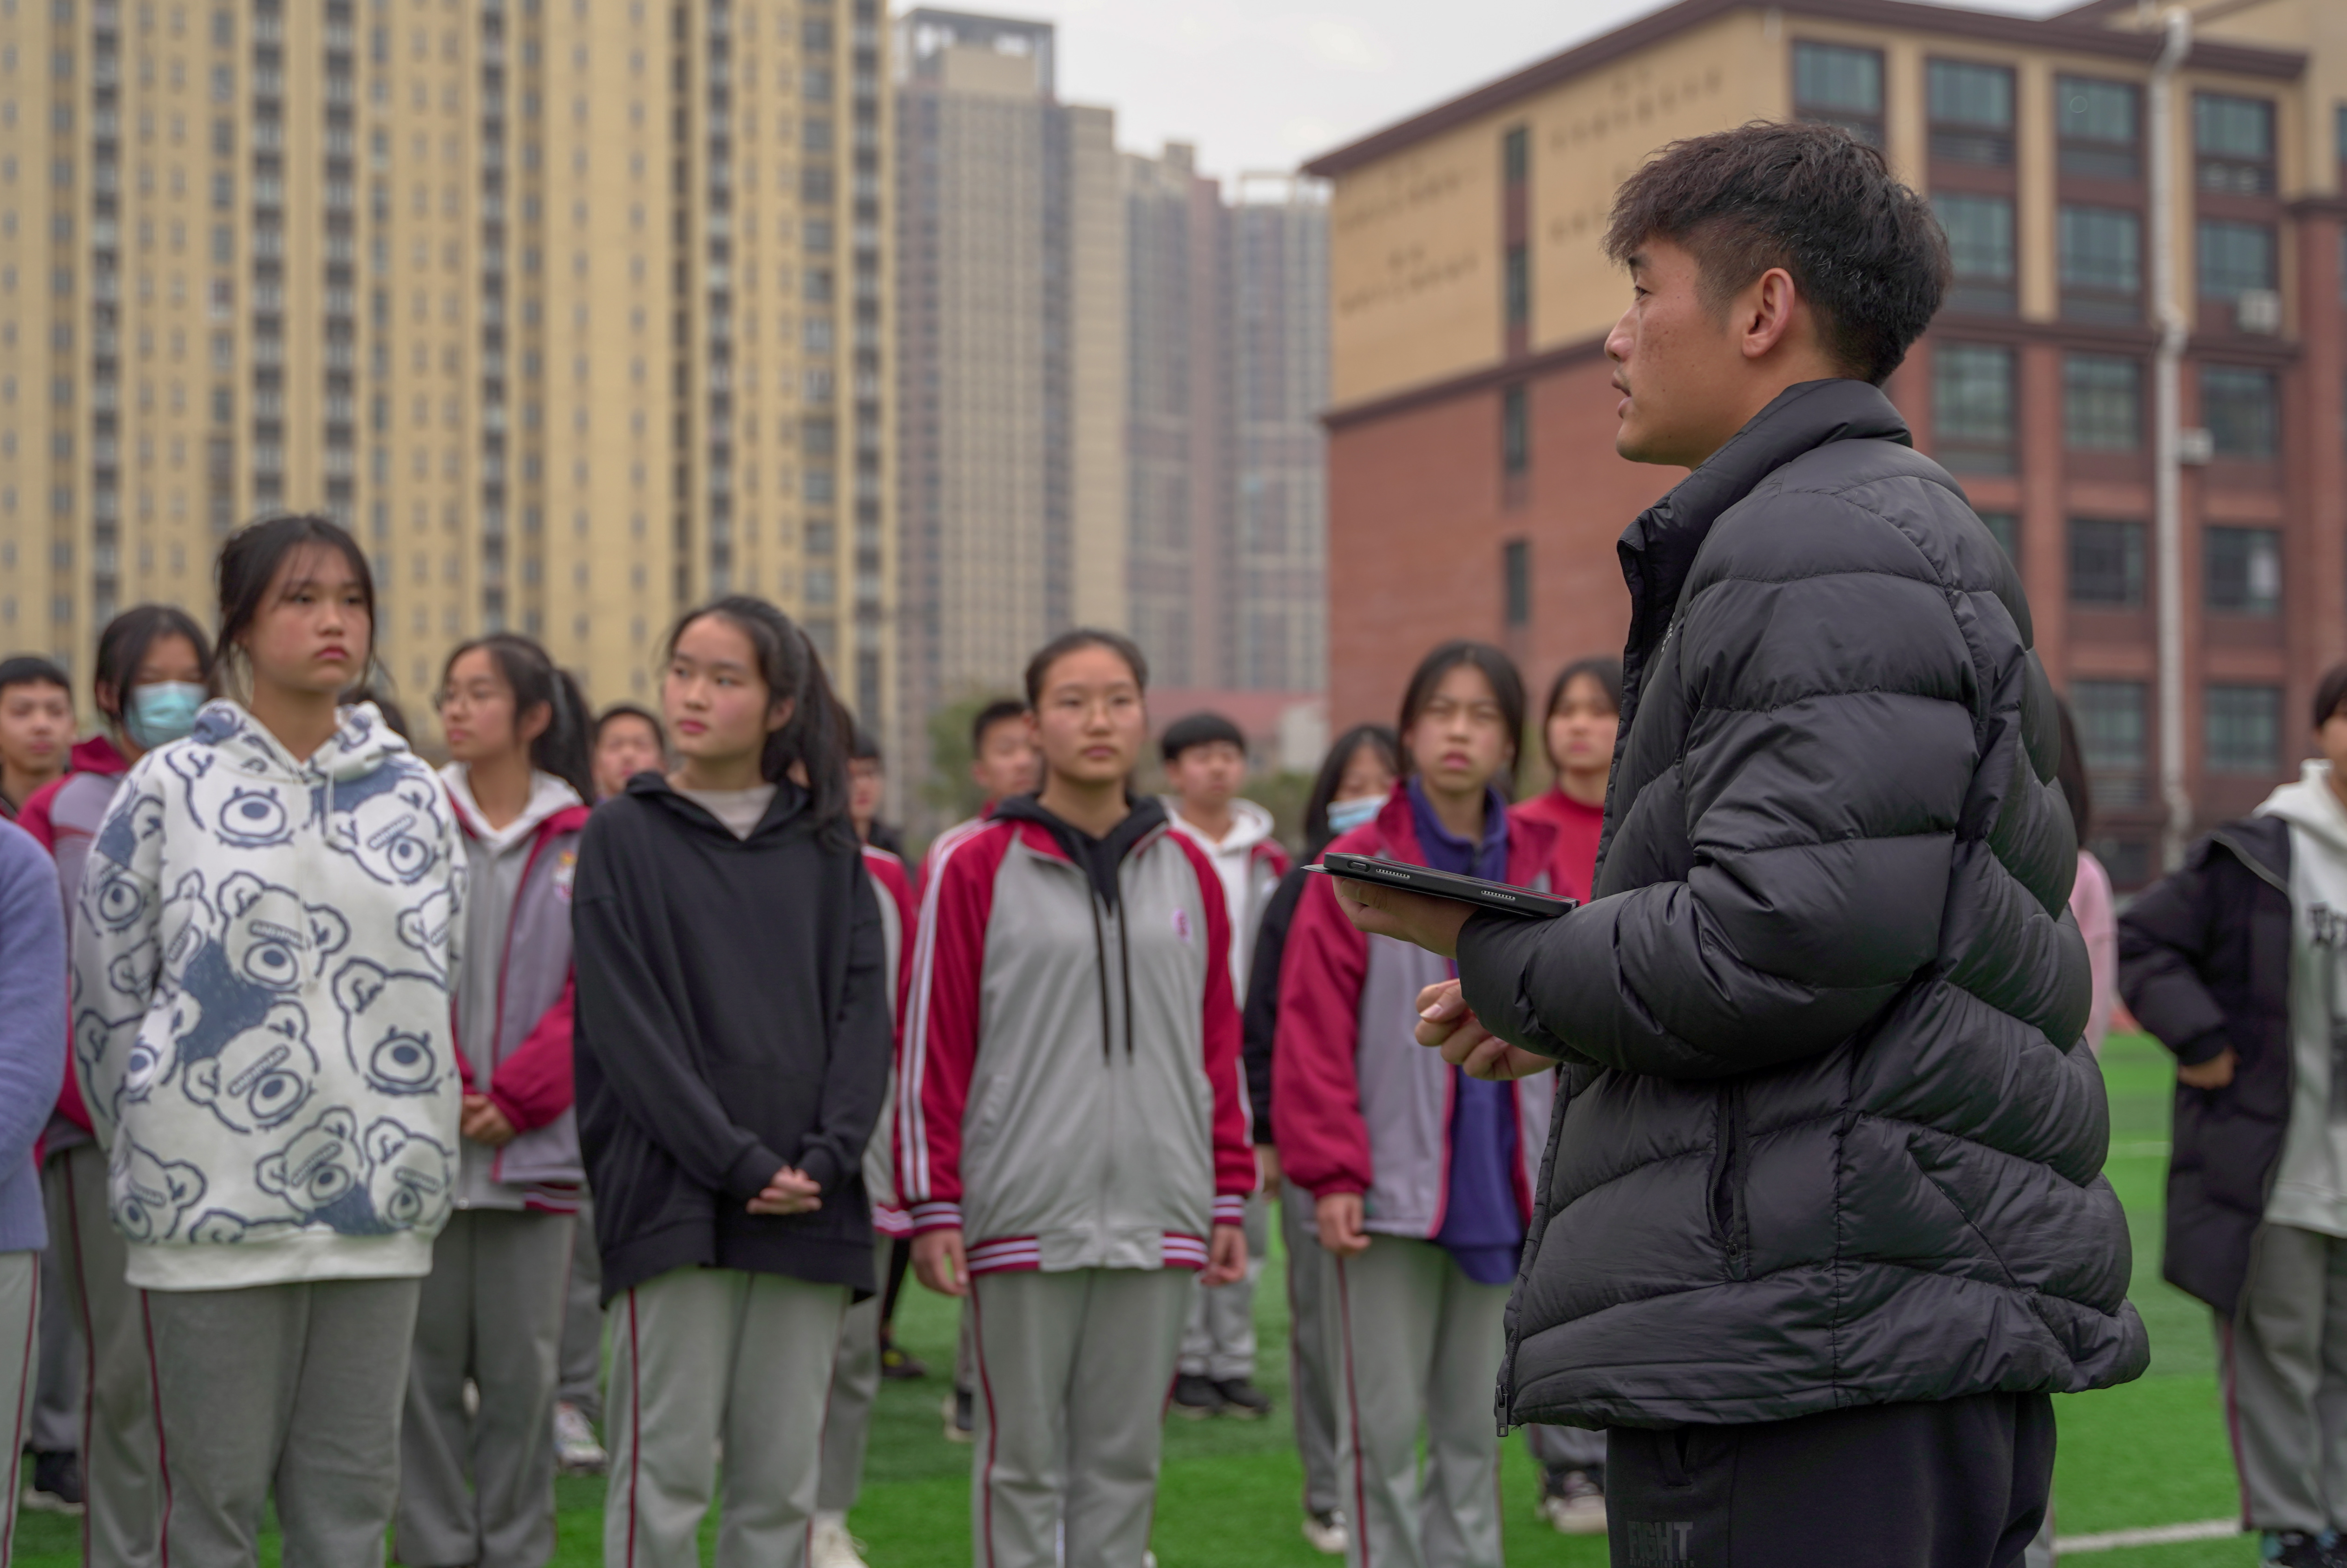 开福区第一中学体育老师黄鑫在课堂上向学生介绍“智慧操场”系统的应用。 